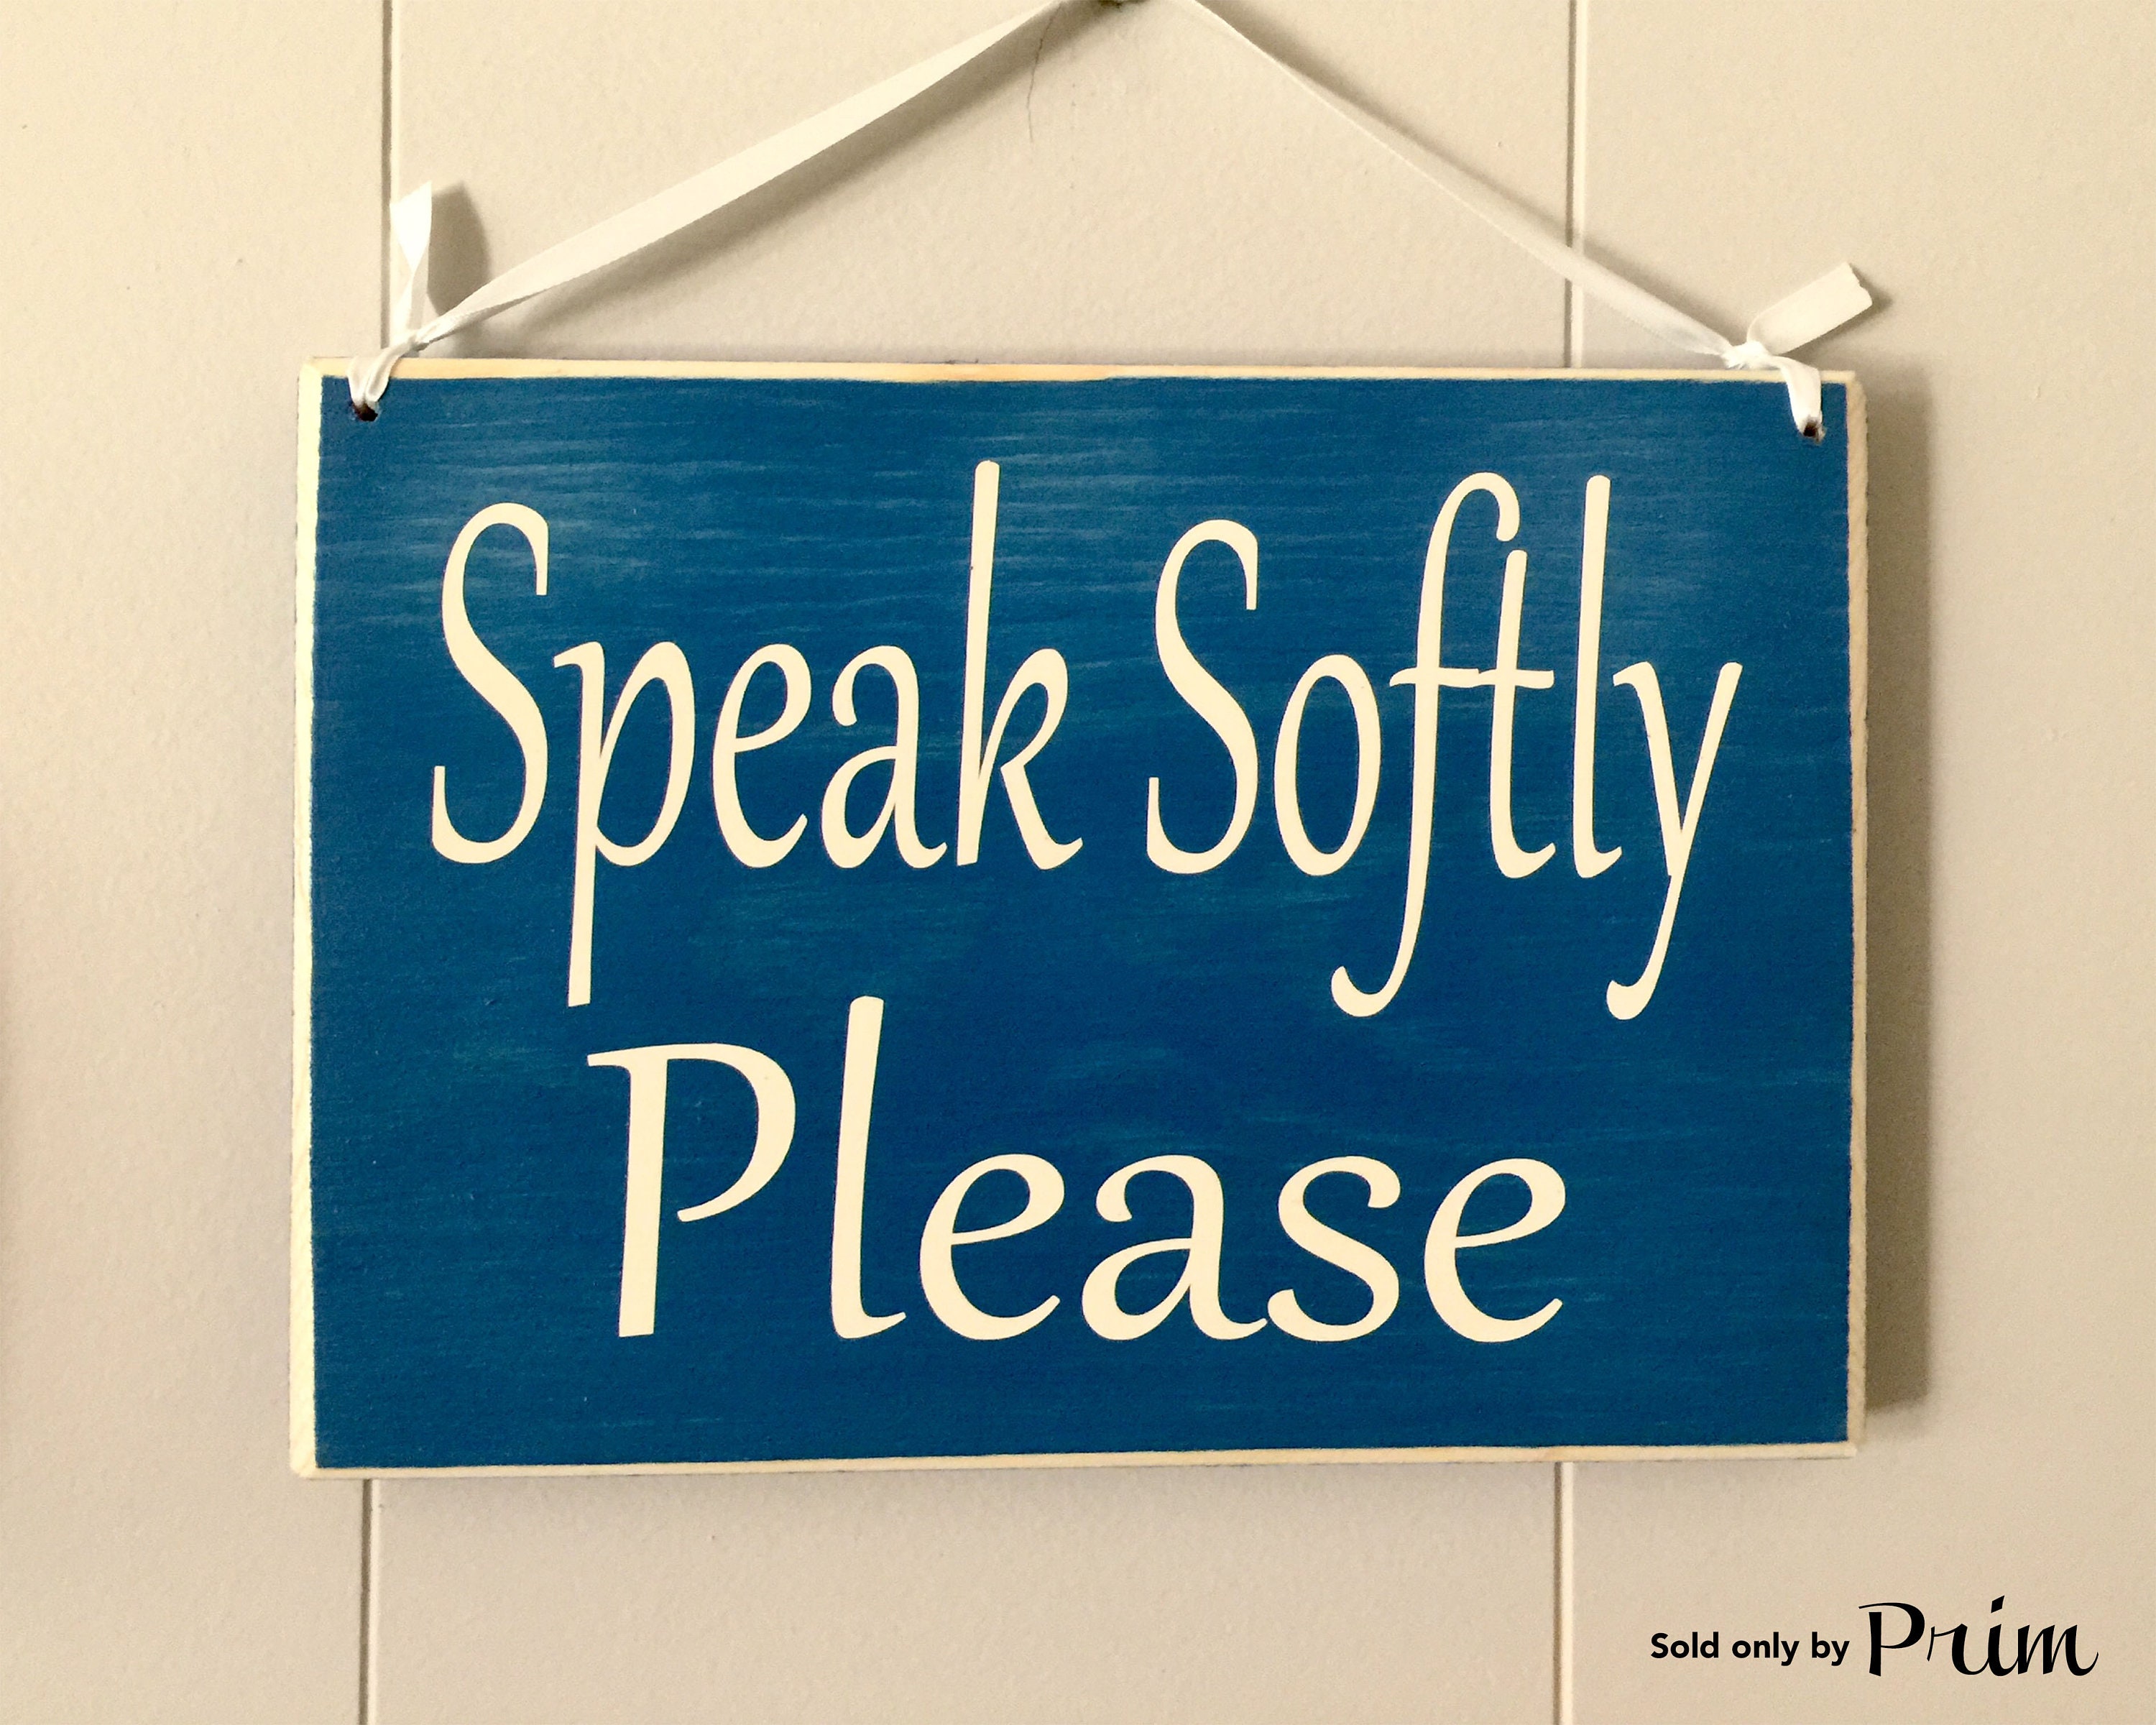 Quietly spoken. Quiet please. Speak quietly.